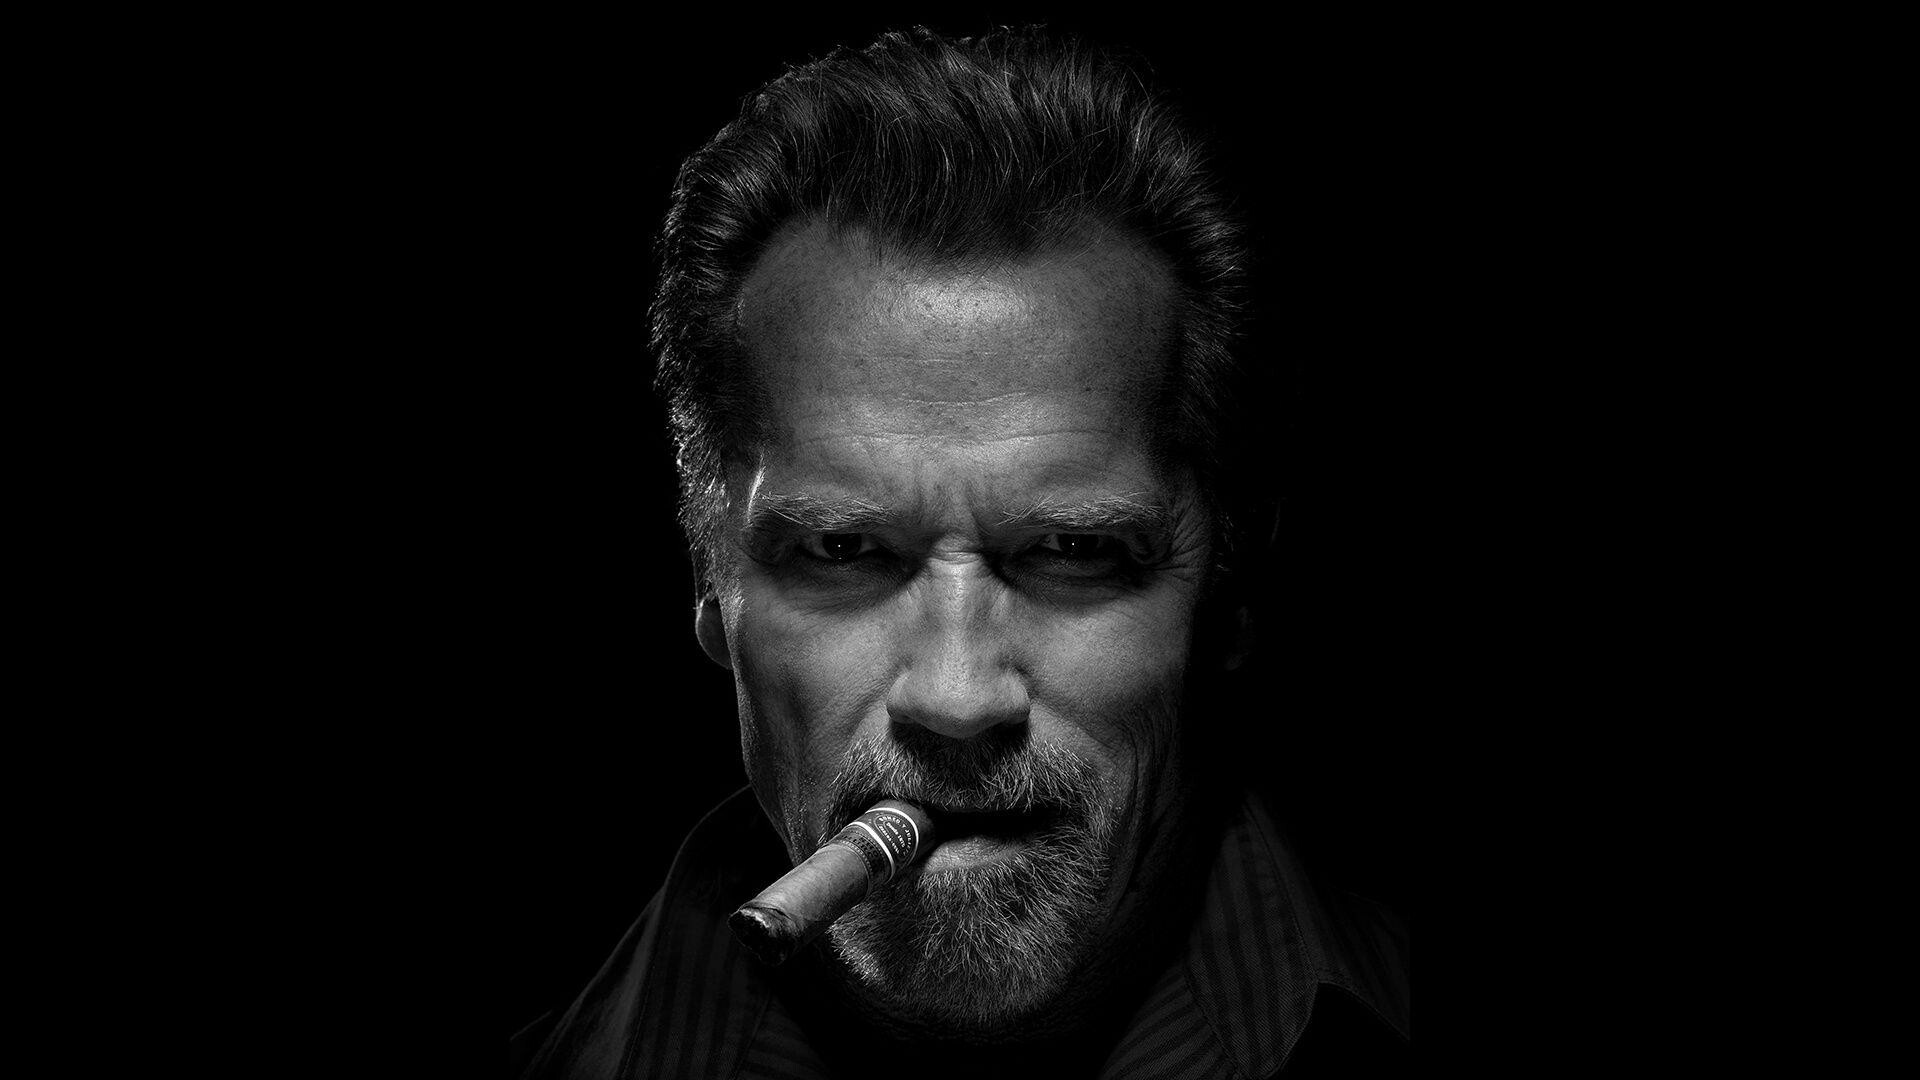 Arnold Schwarzenegger: Starred as Harry Tasker in a 1994 American spy action comedy film, True Lies. 1920x1080 Full HD Wallpaper.